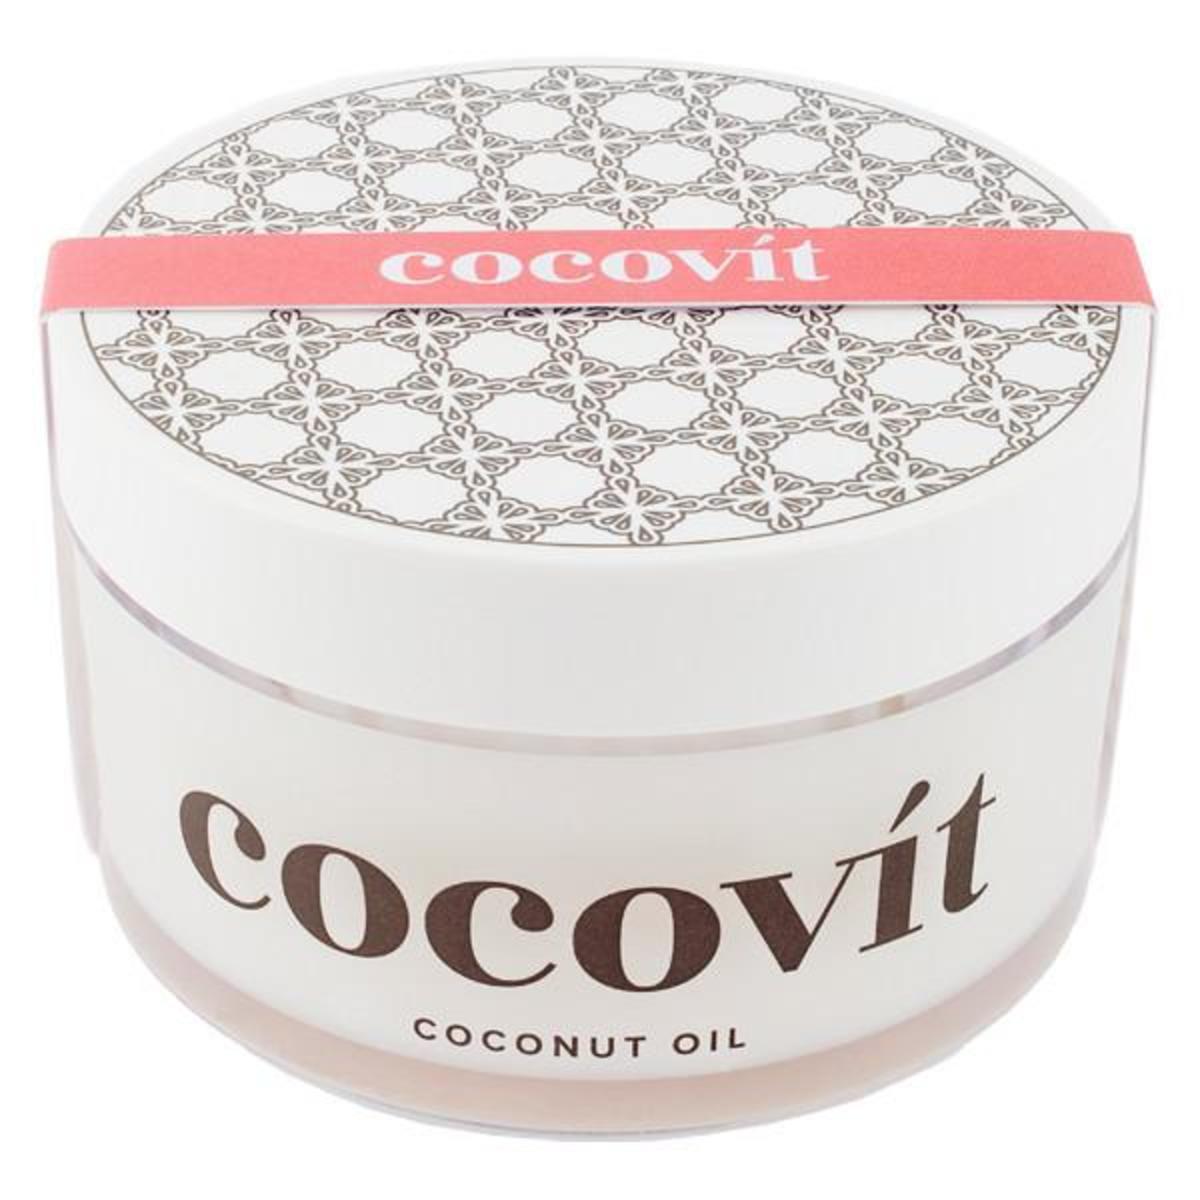 Cocovit Coconut Oil